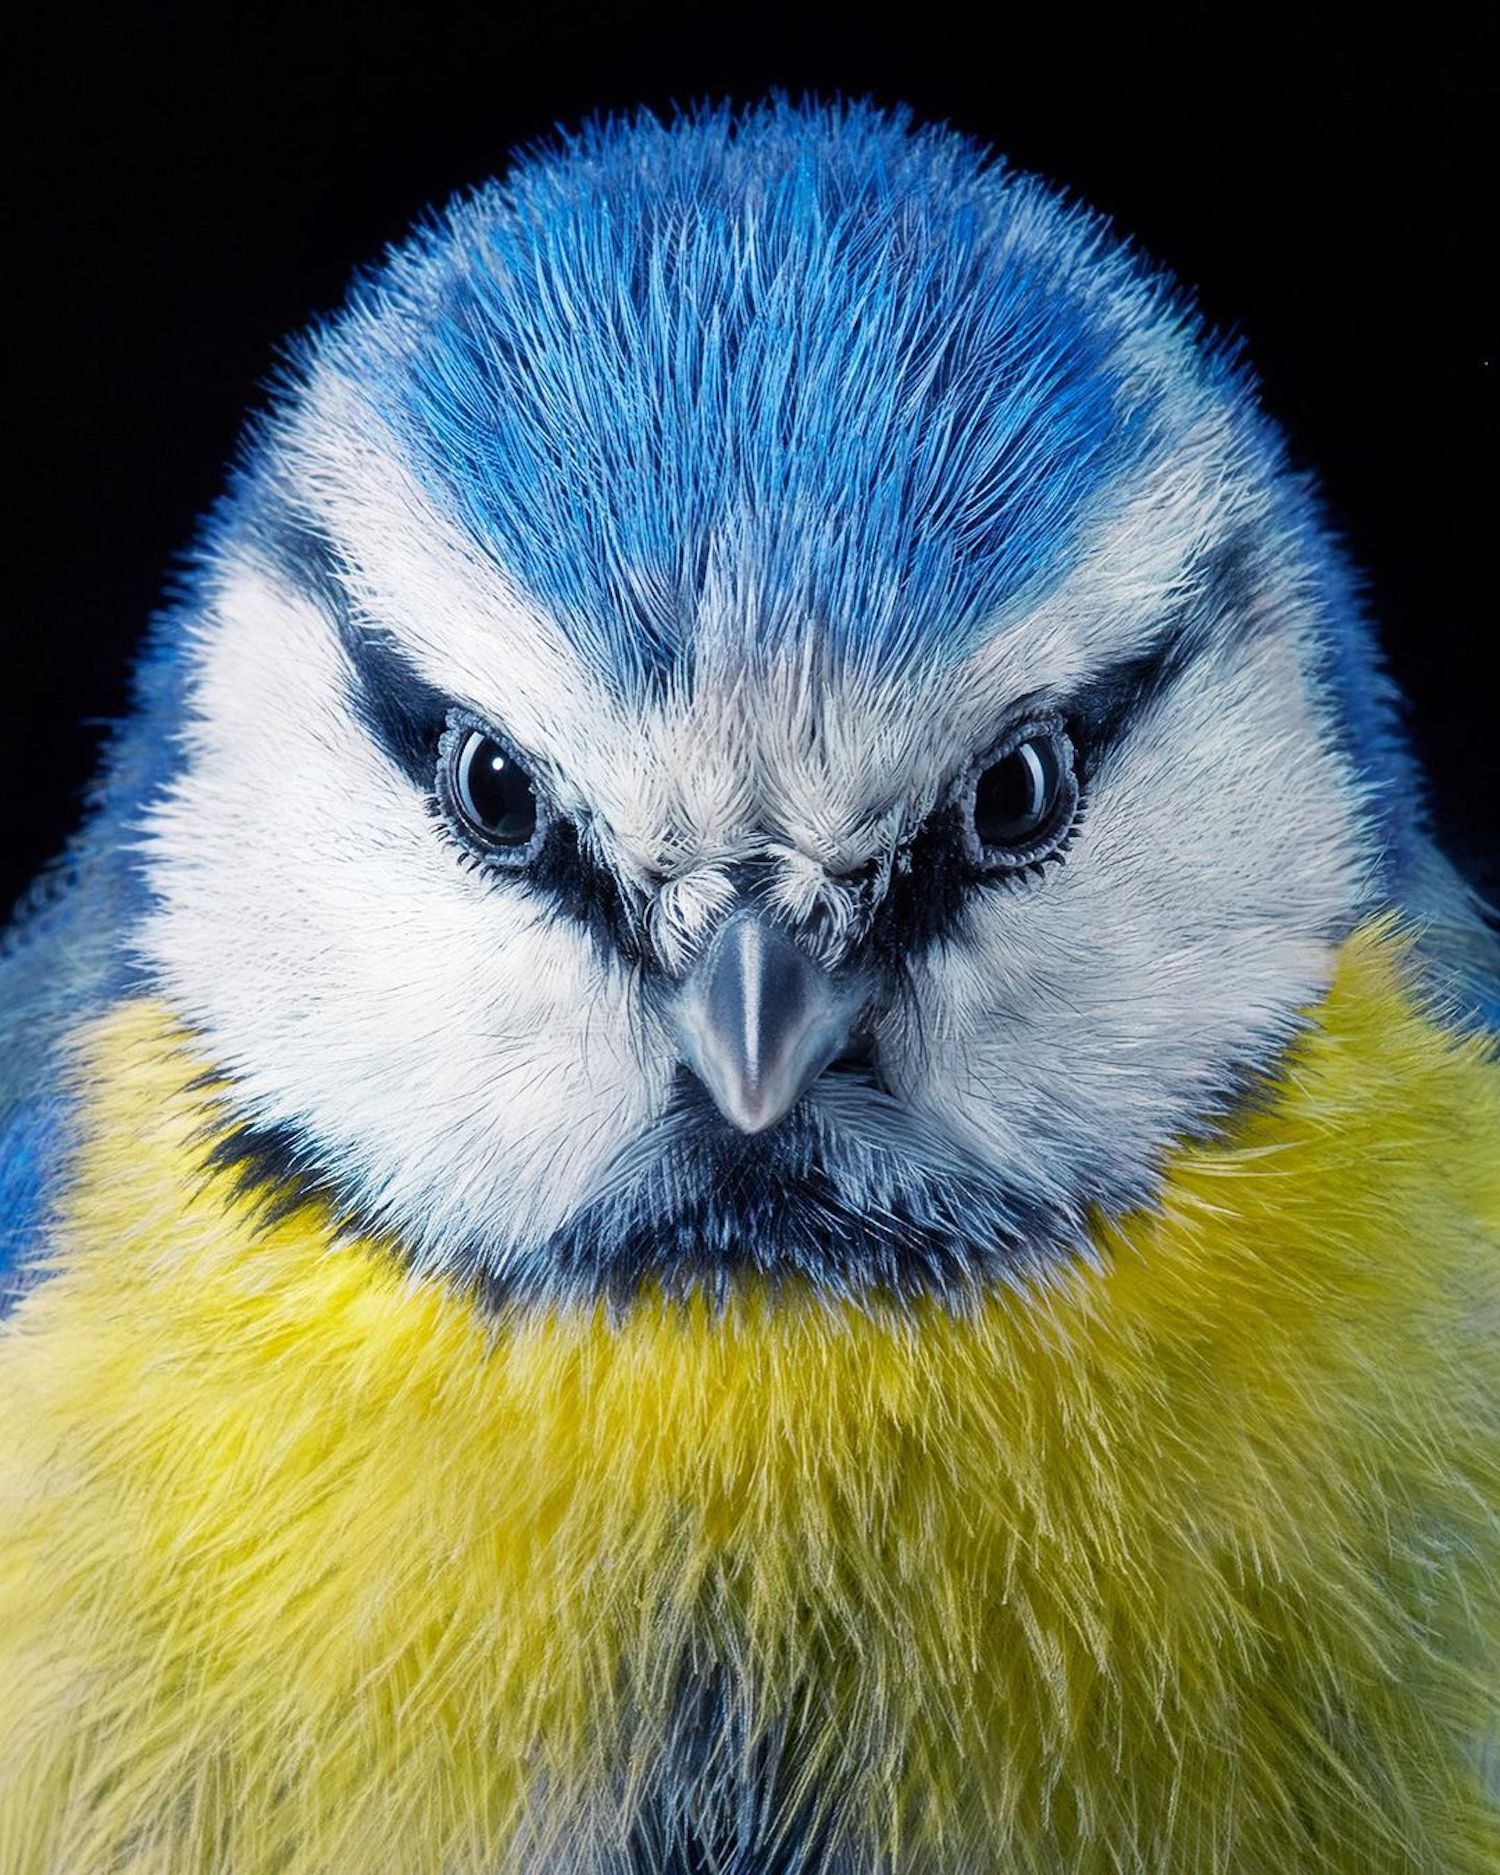 Le photographe Tim Flach capture des portraits saisissants d'oiseaux en voie de disparition